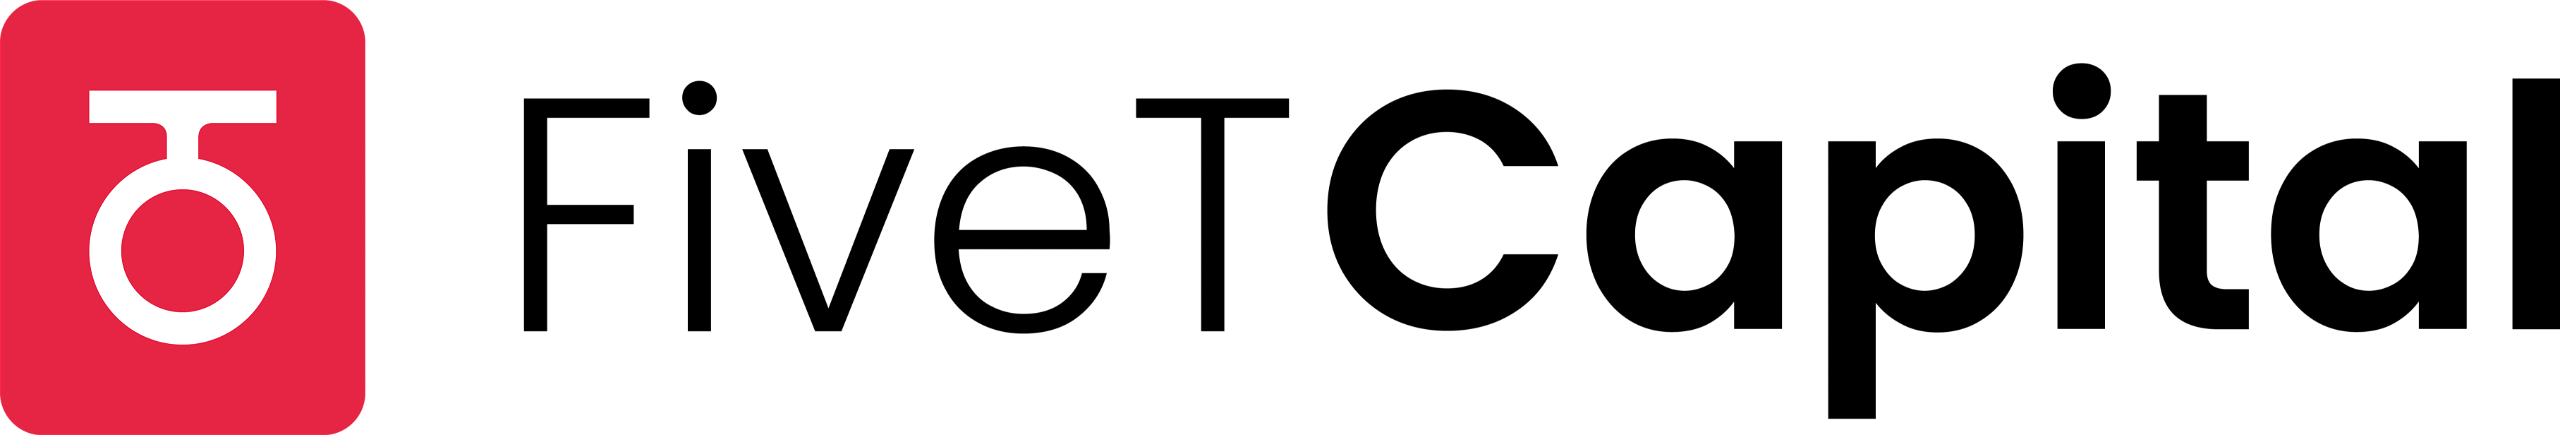 fivet-logo-final-cut_black.png